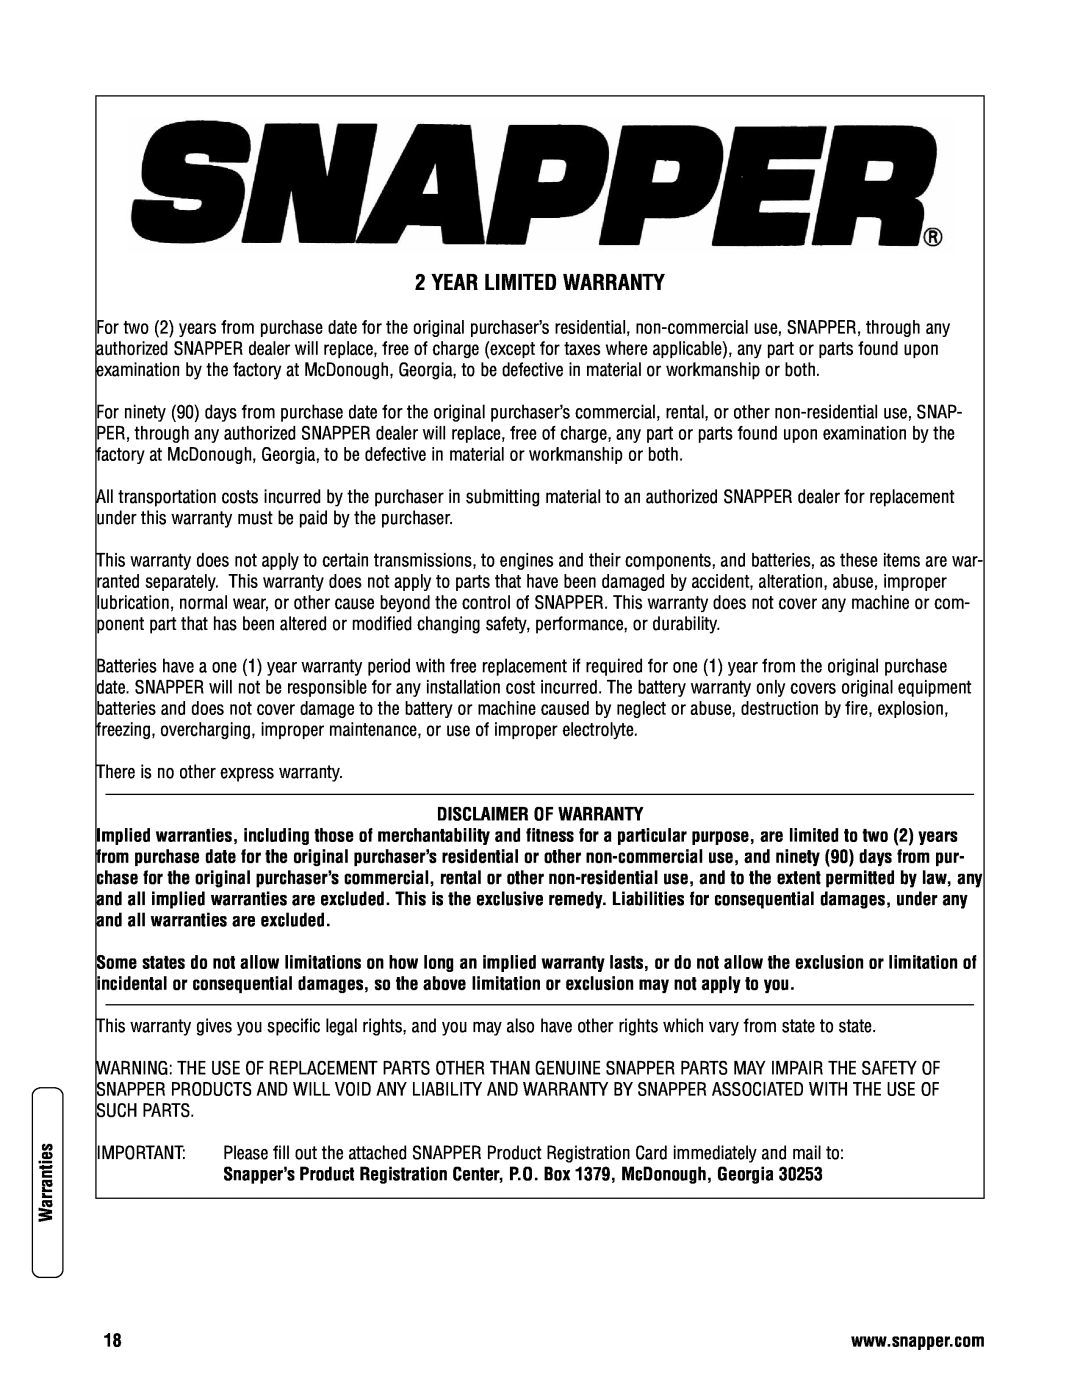 Snapper SPV21675FC, SPV21675EFC specifications Year Limited Warranty, Warranties, Disclaimer Of Warranty 